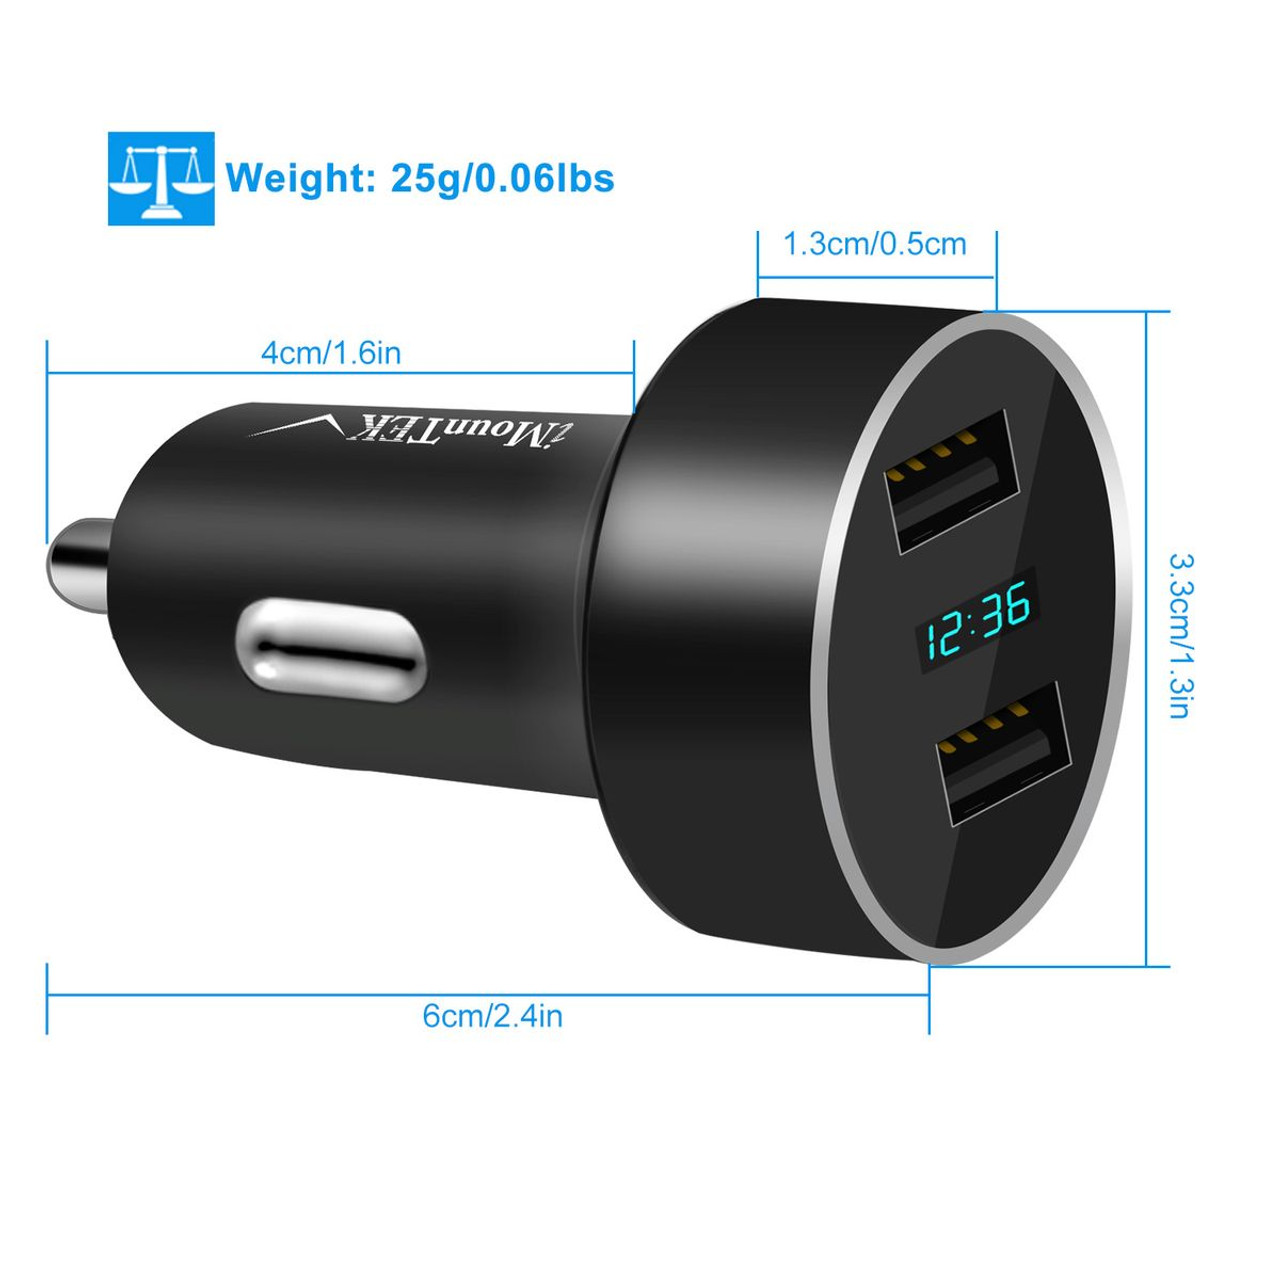 iMounTEK® Dual USB Car Charger Adapter product image